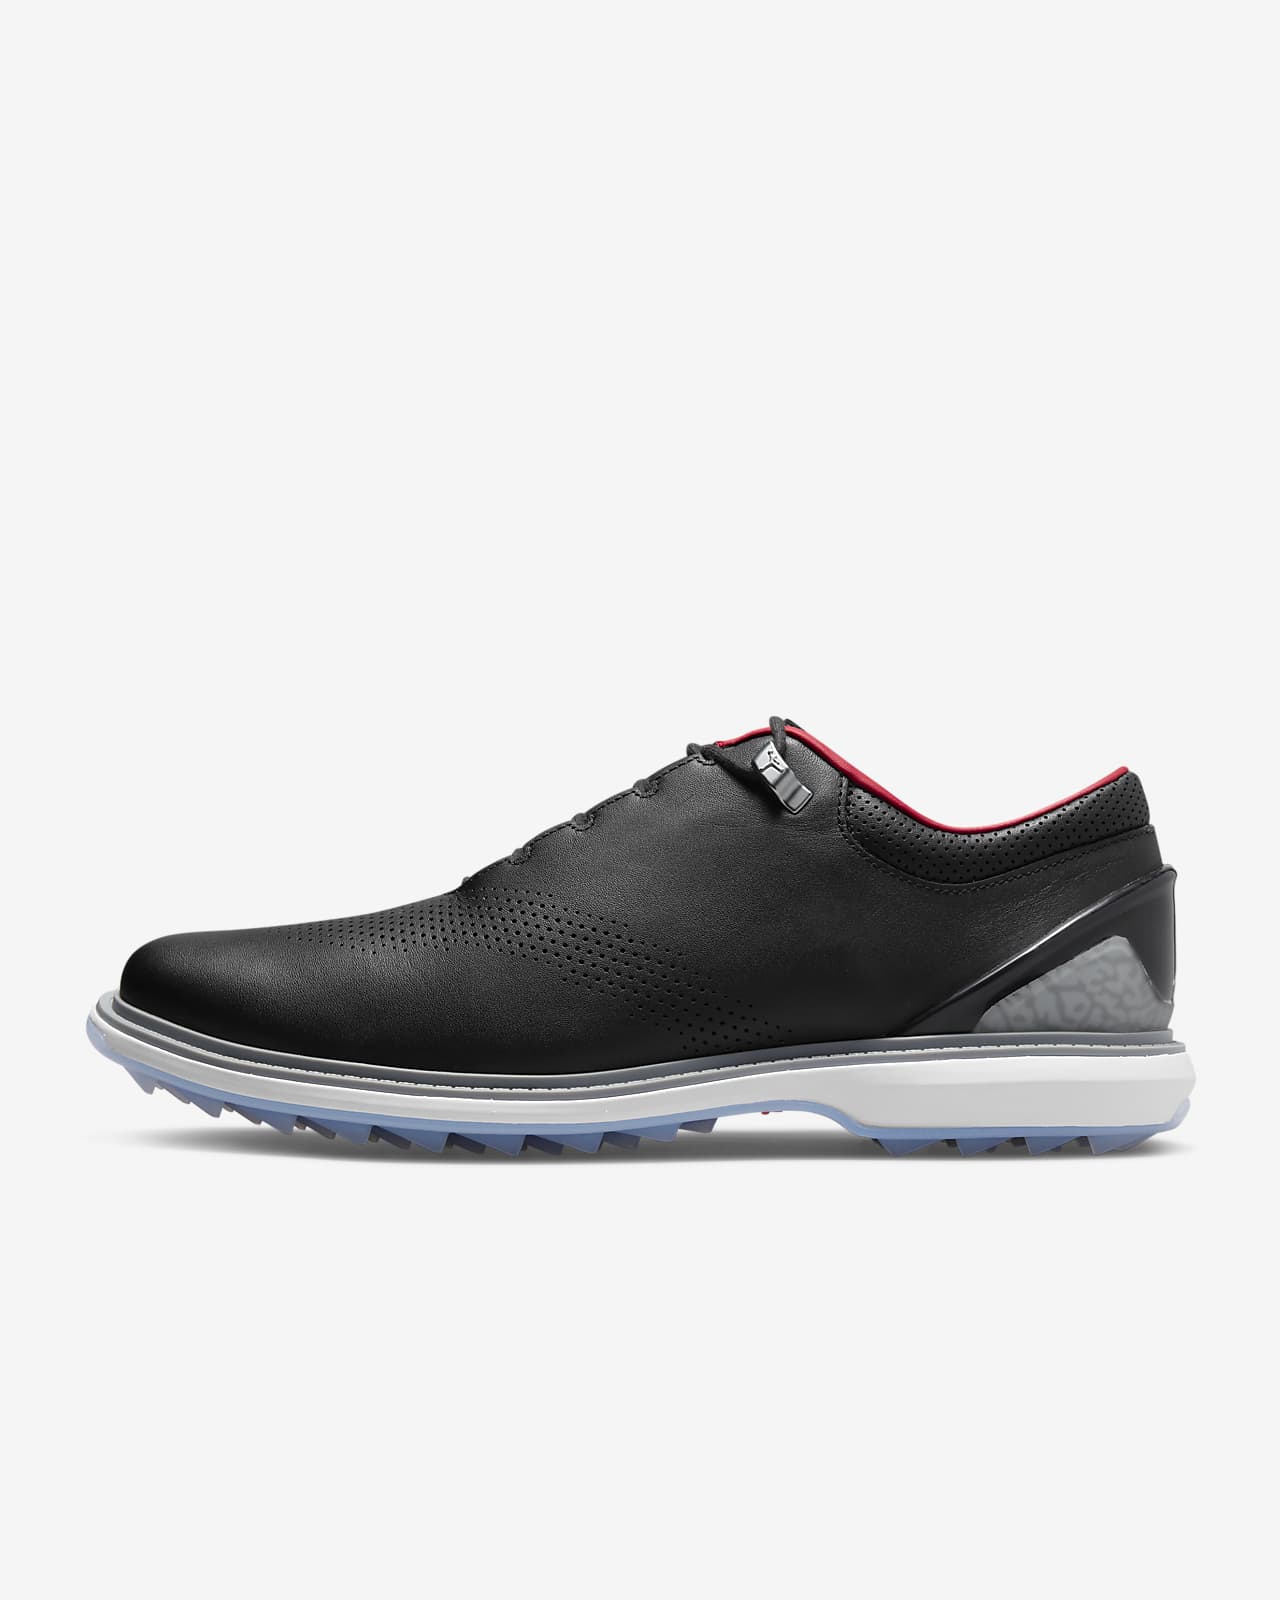 Chaussure de golf Jordan ADG 4 pour Homme